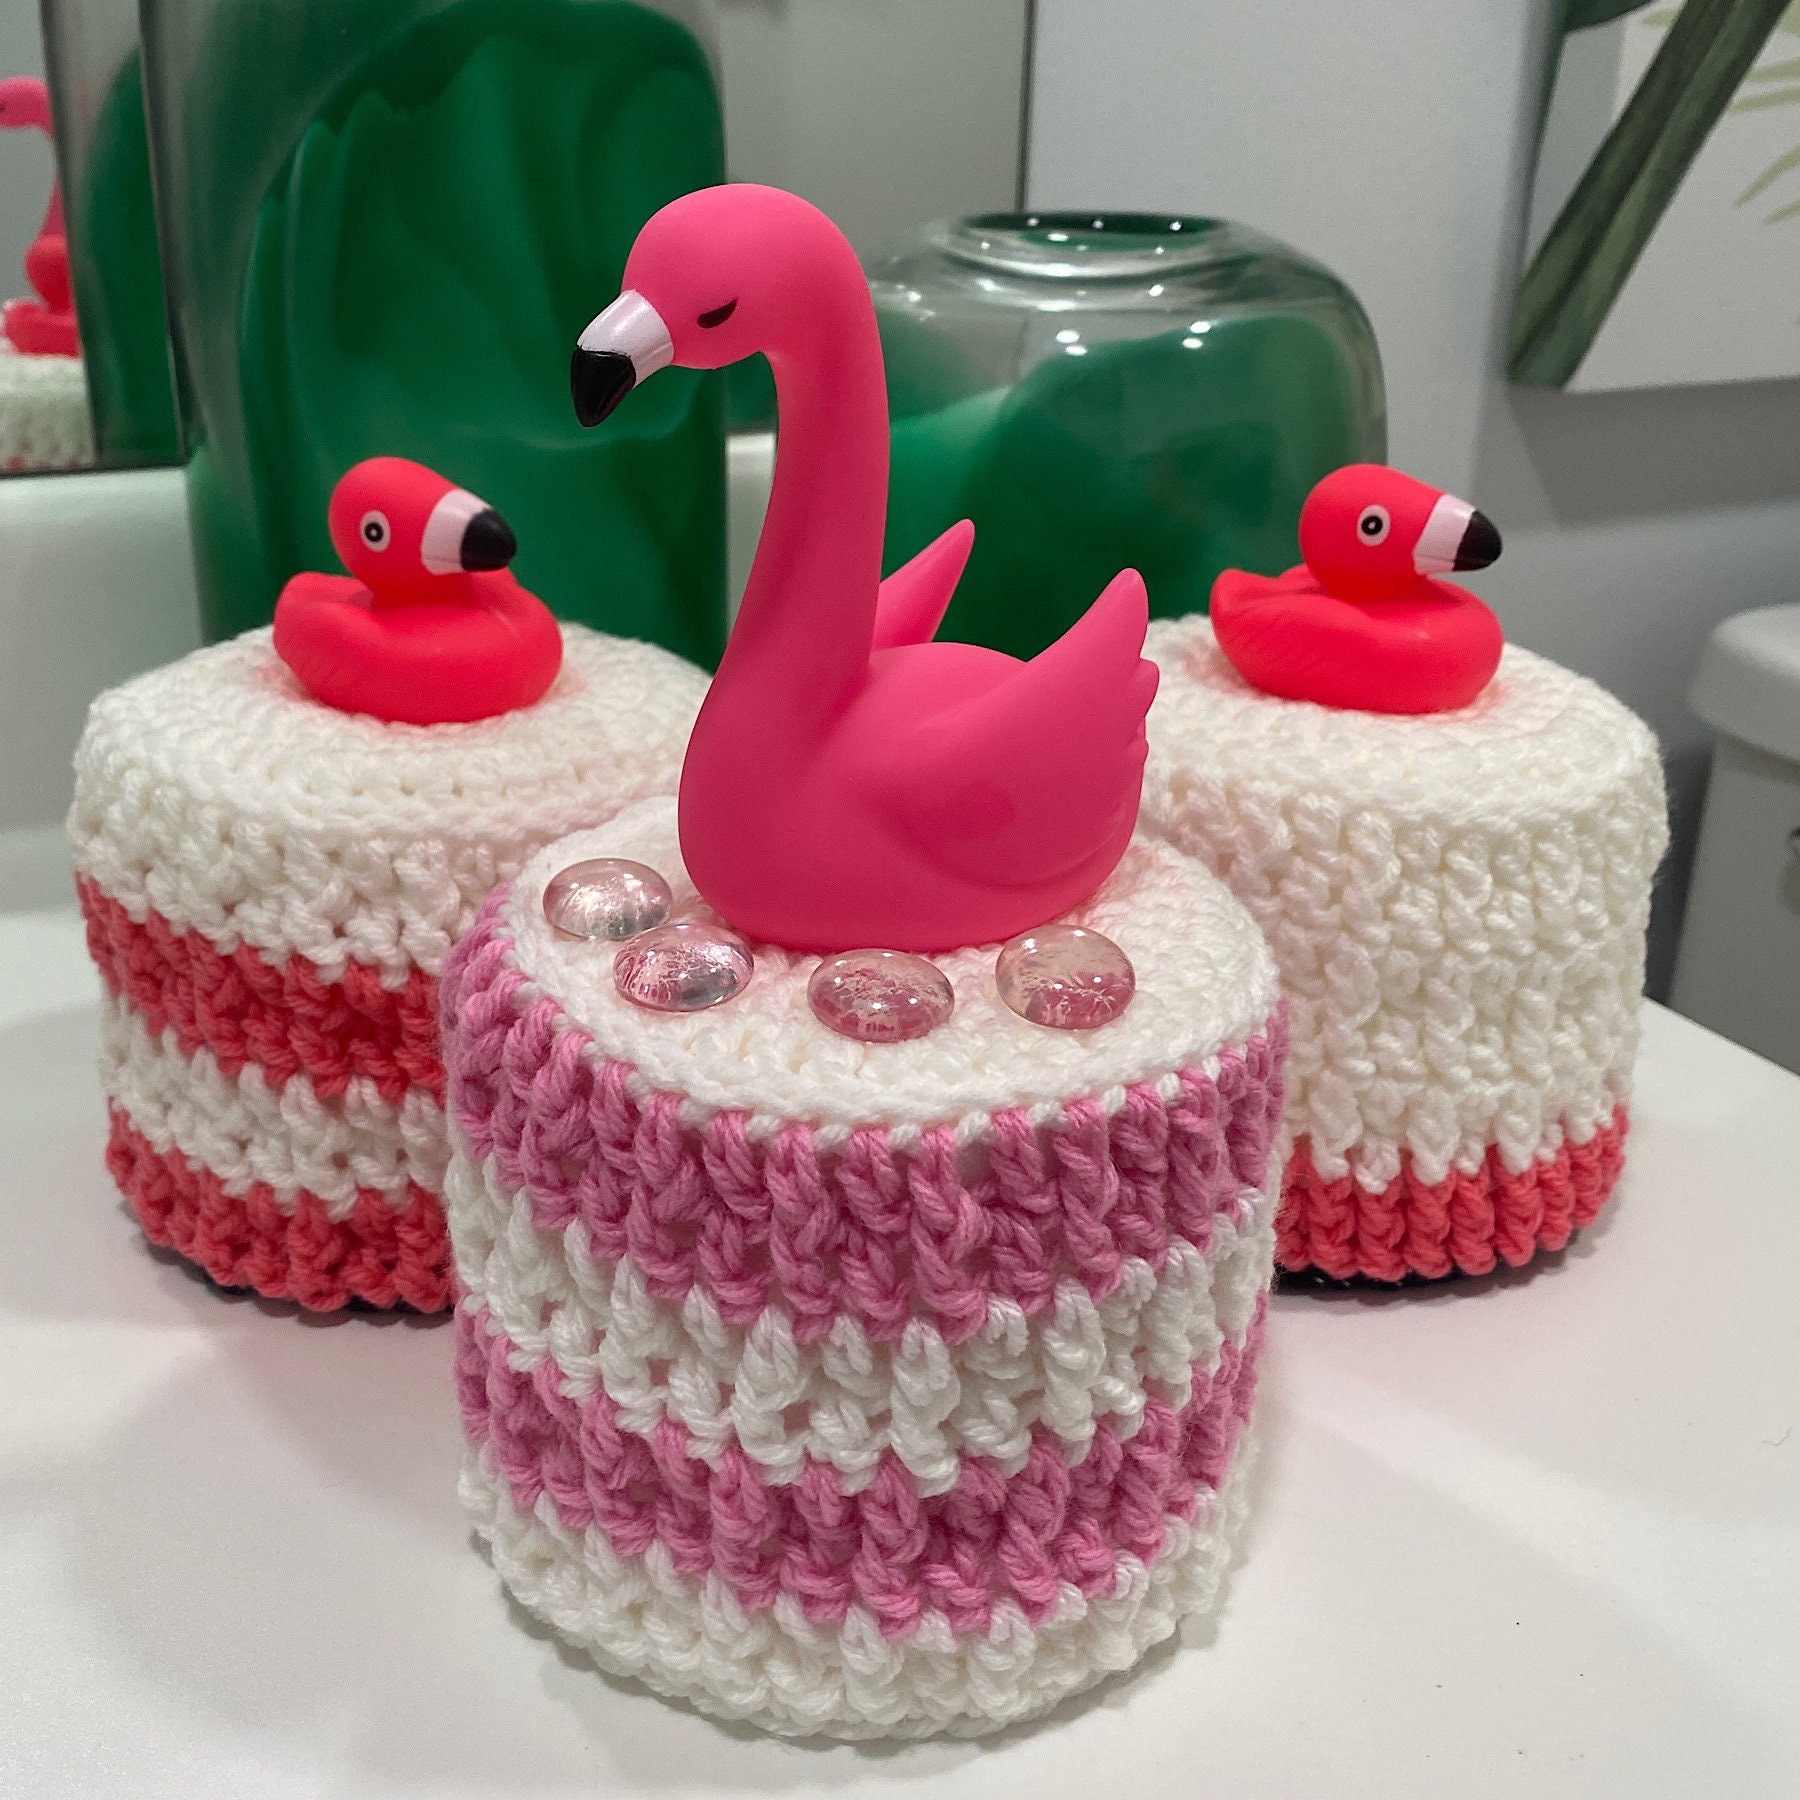 Tropical Pink Flamingo Haitian Metal Art Toilet Paper or Hand Towel Holder M244